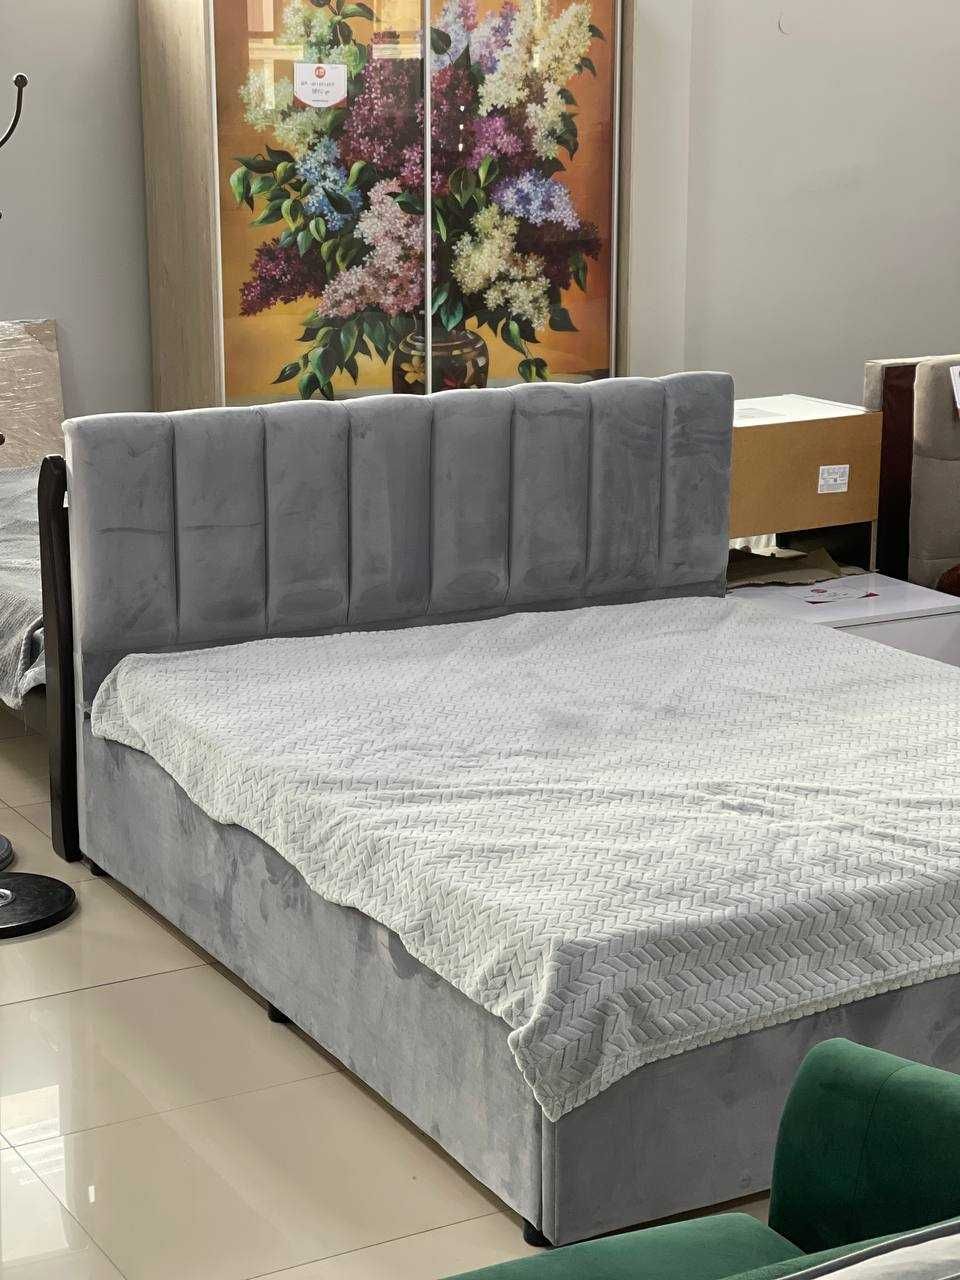 М'яке ліжко "Монро" 160*200 см з металевим каркасом